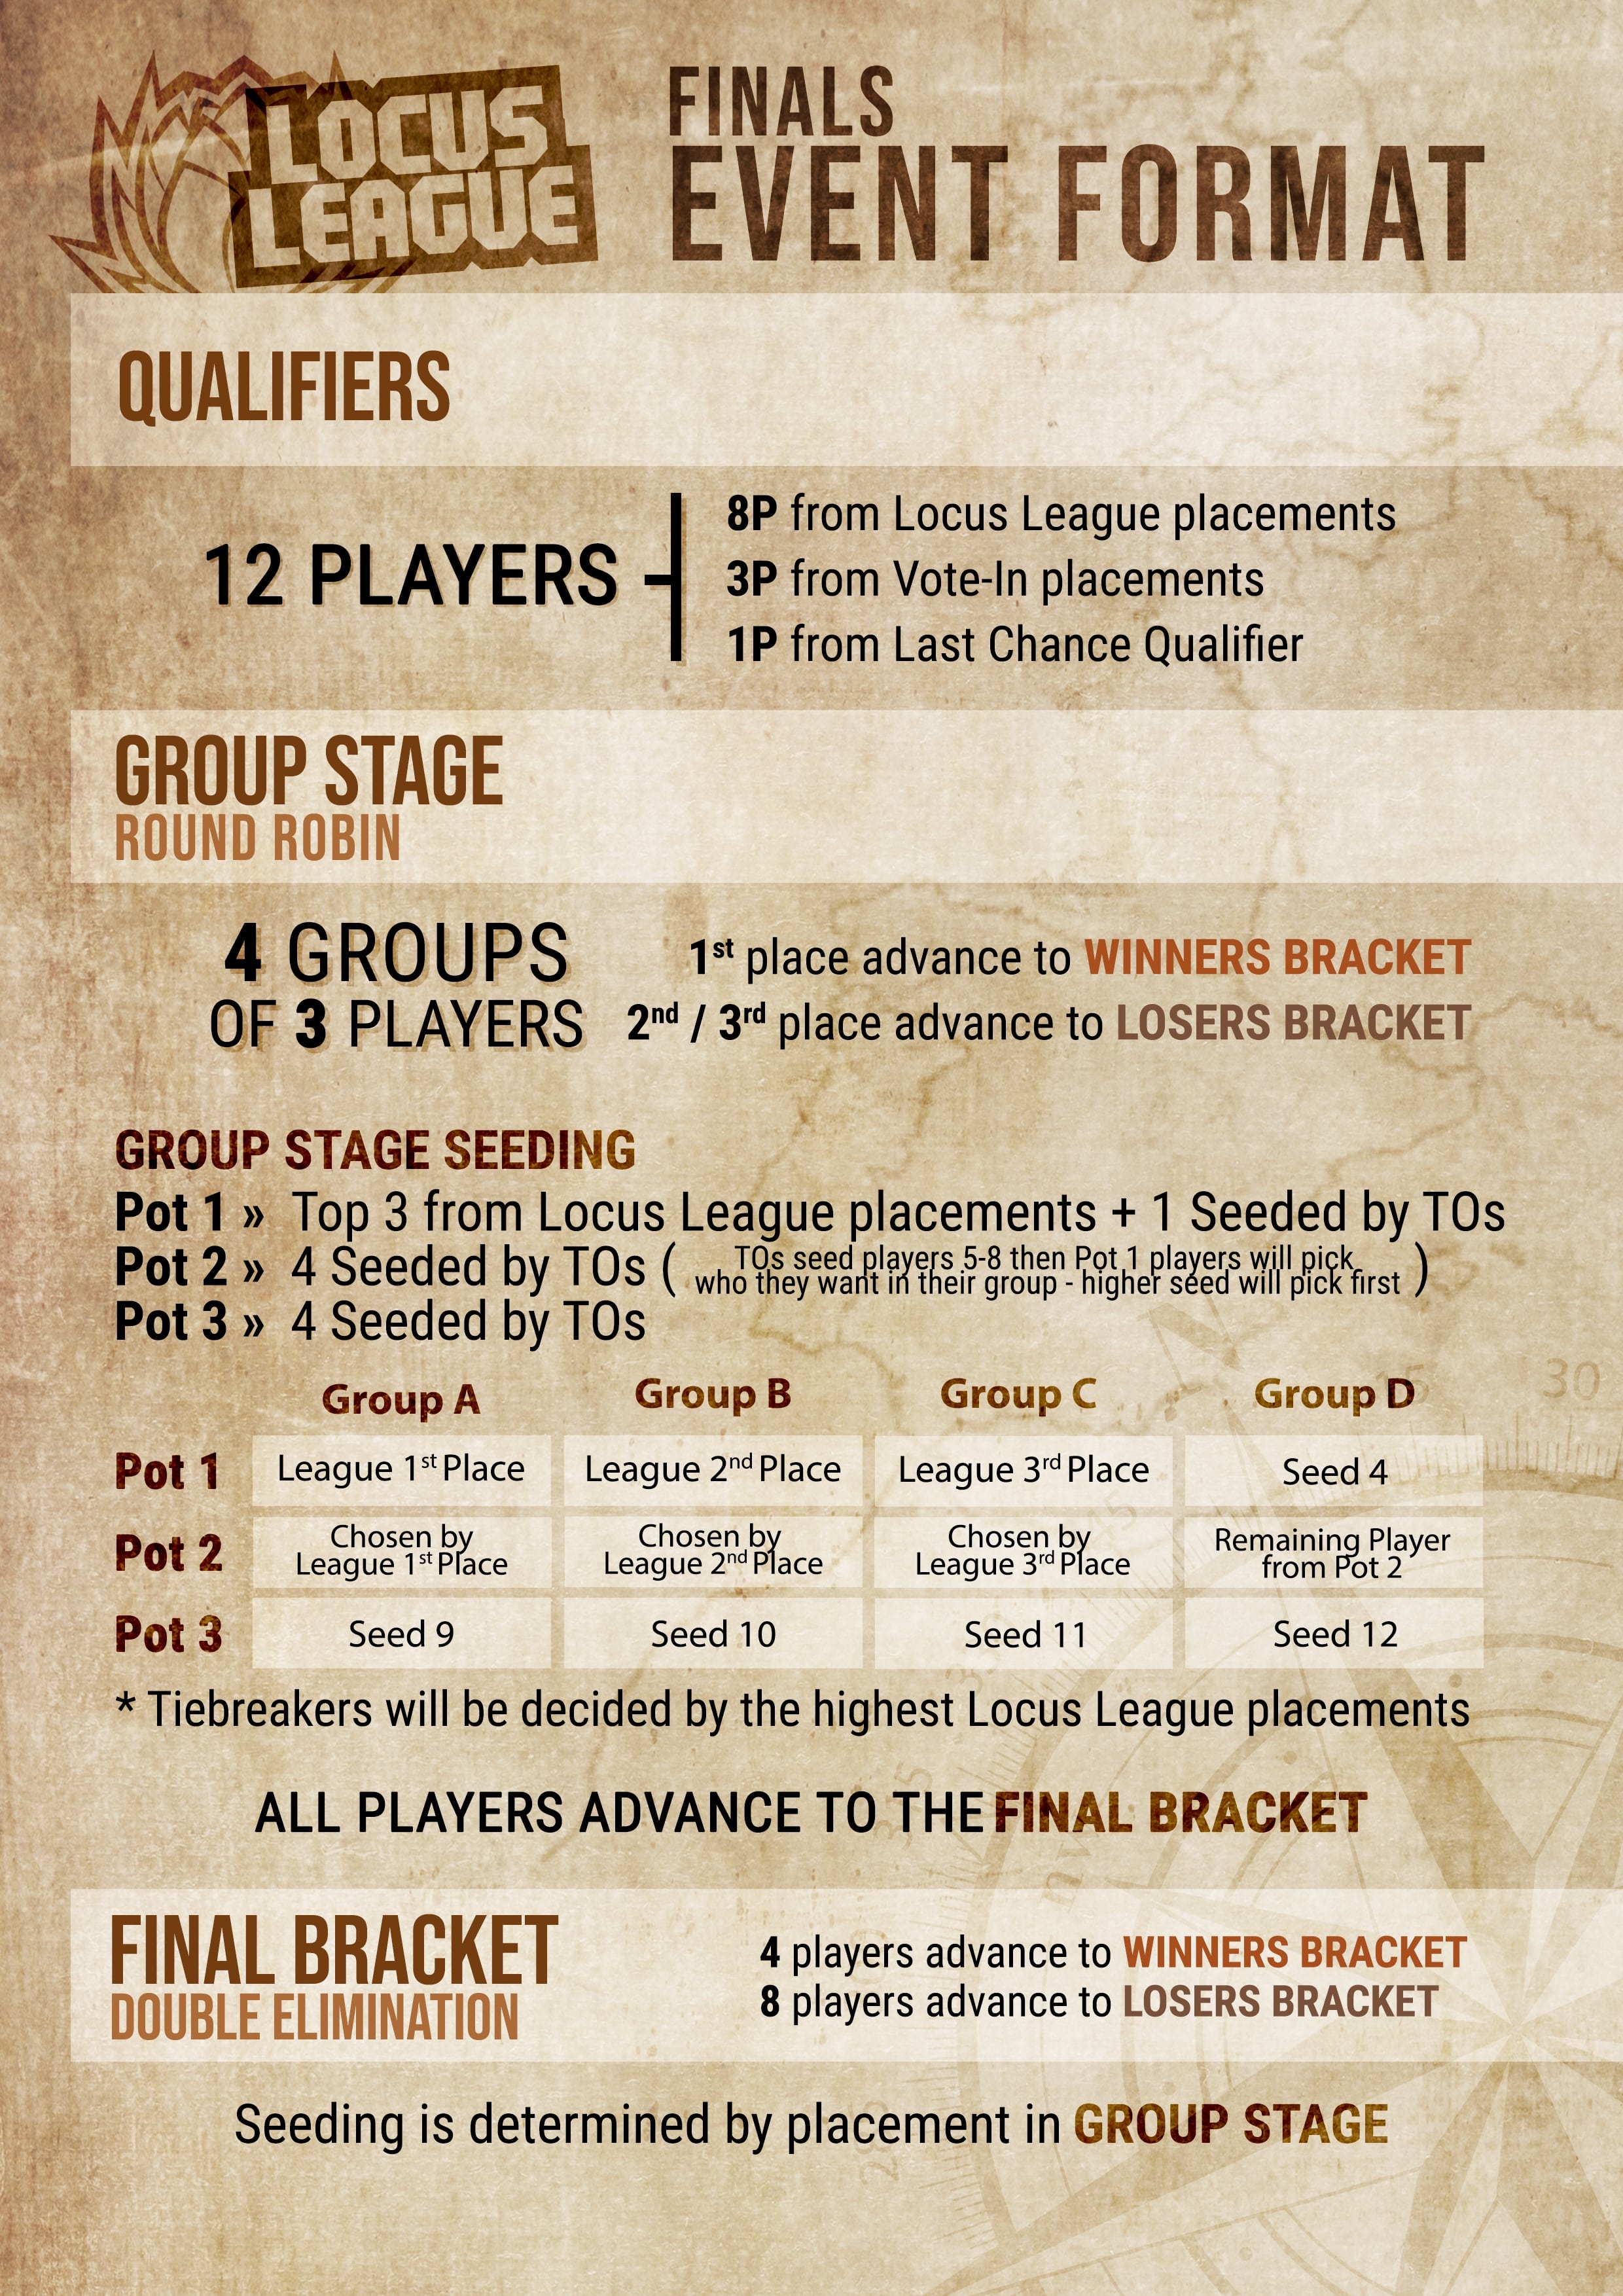 locus league event guideline image